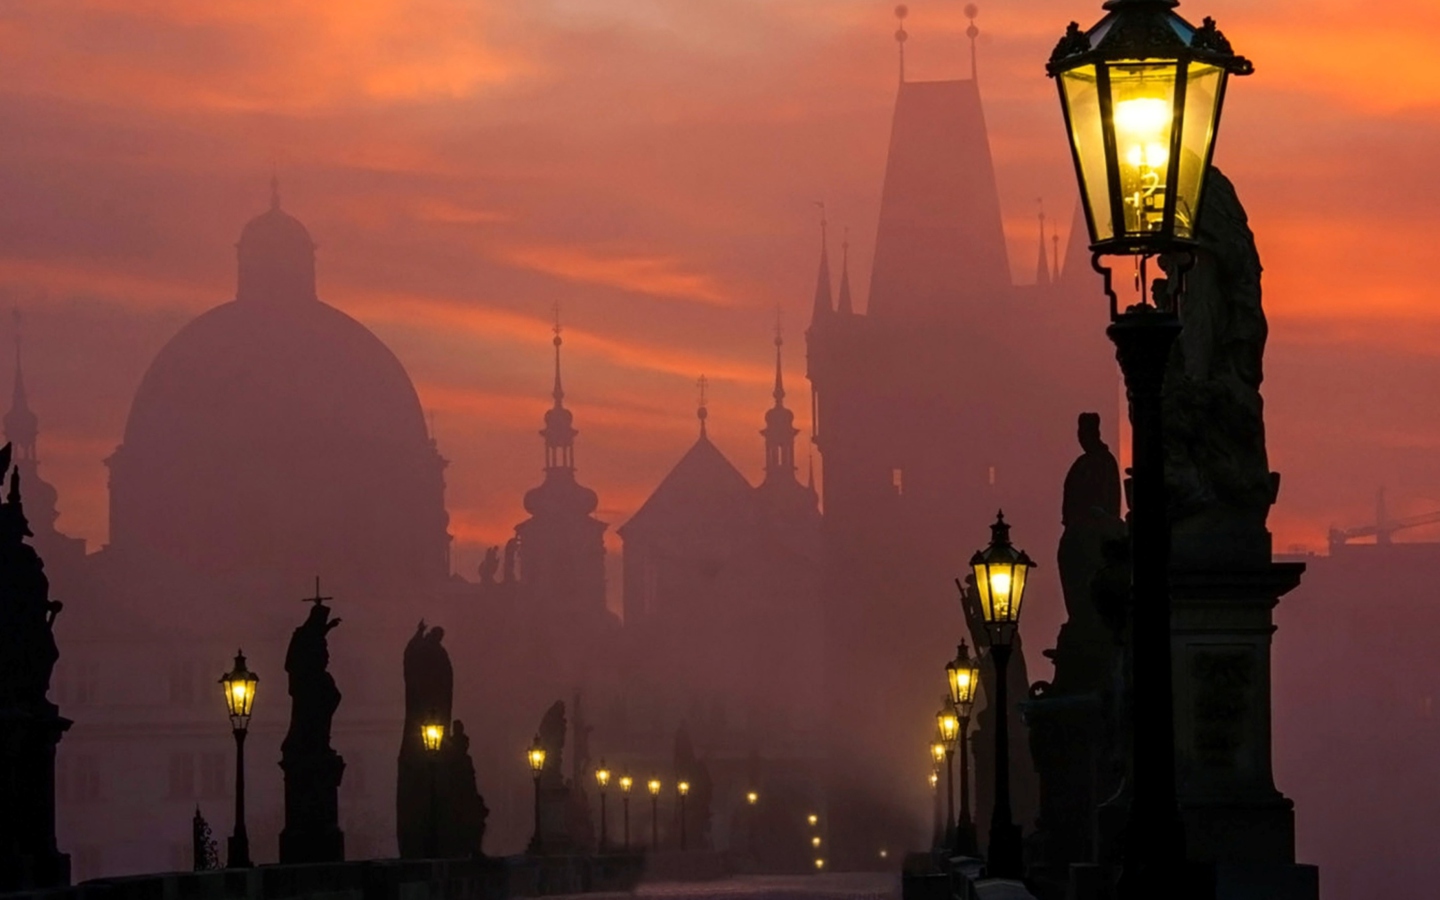 Sfondi Charles Bridge - Prague in fog 1440x900